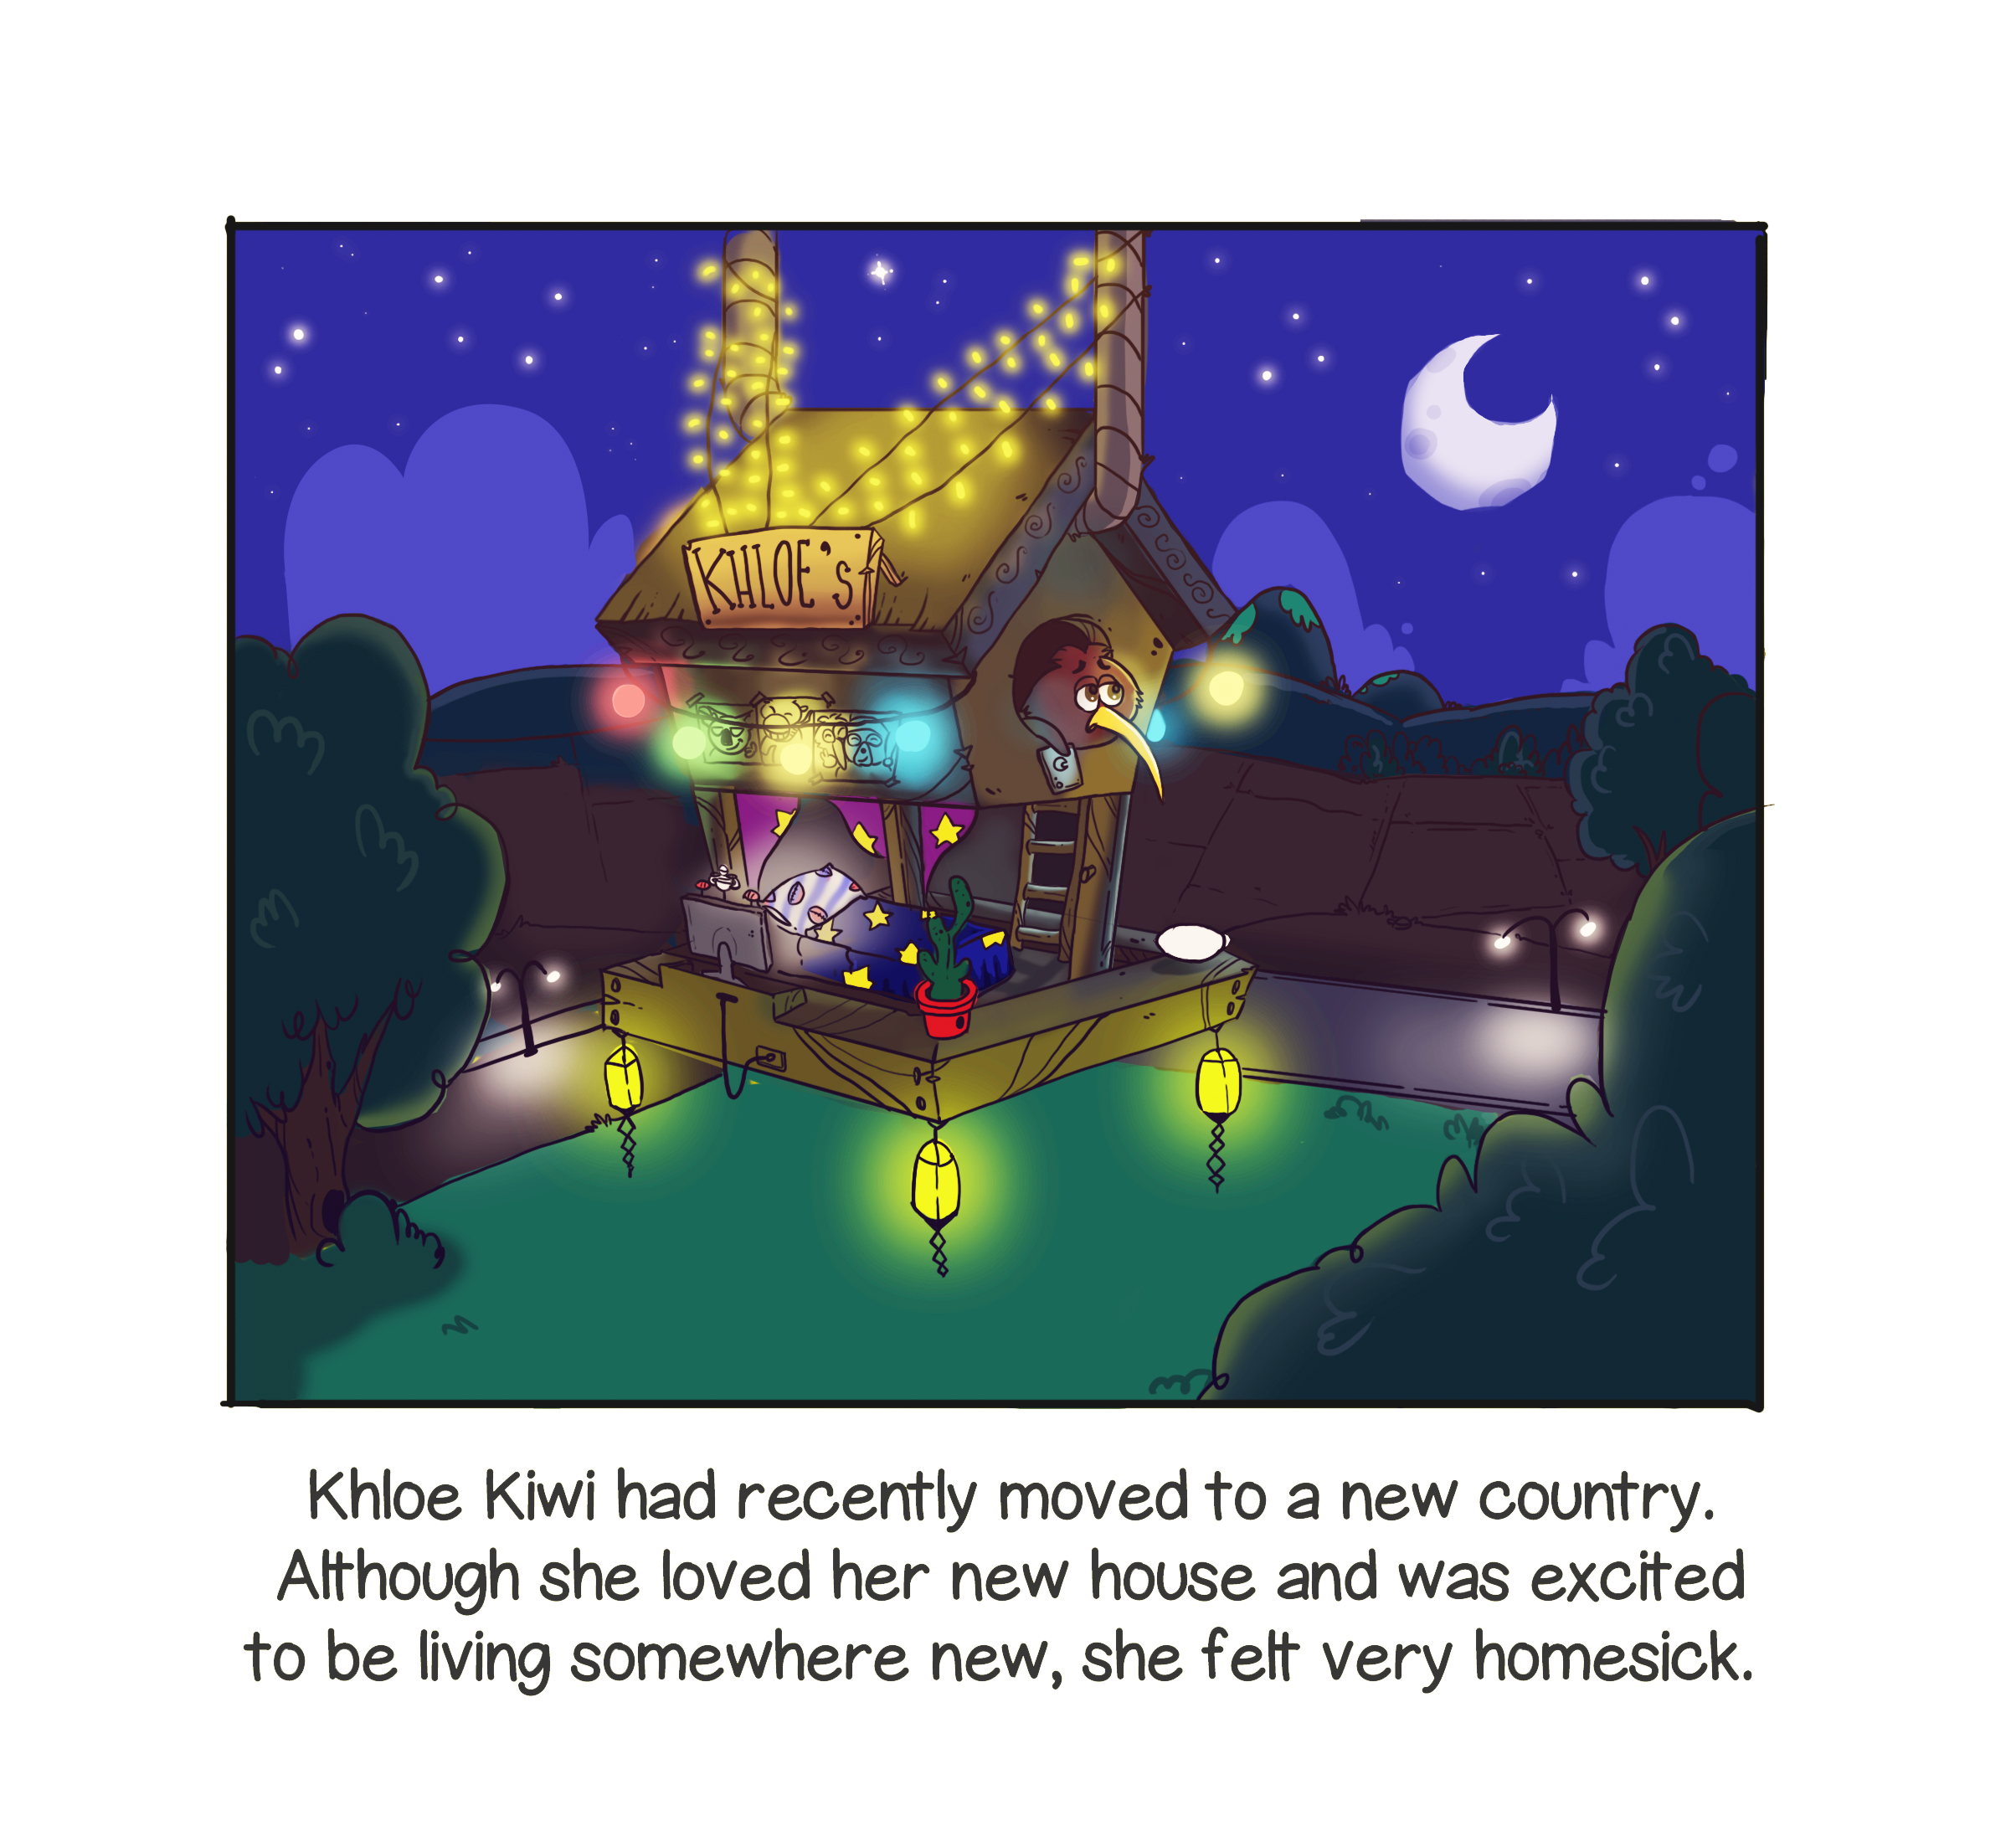 Khloe Kiwi gets homesick